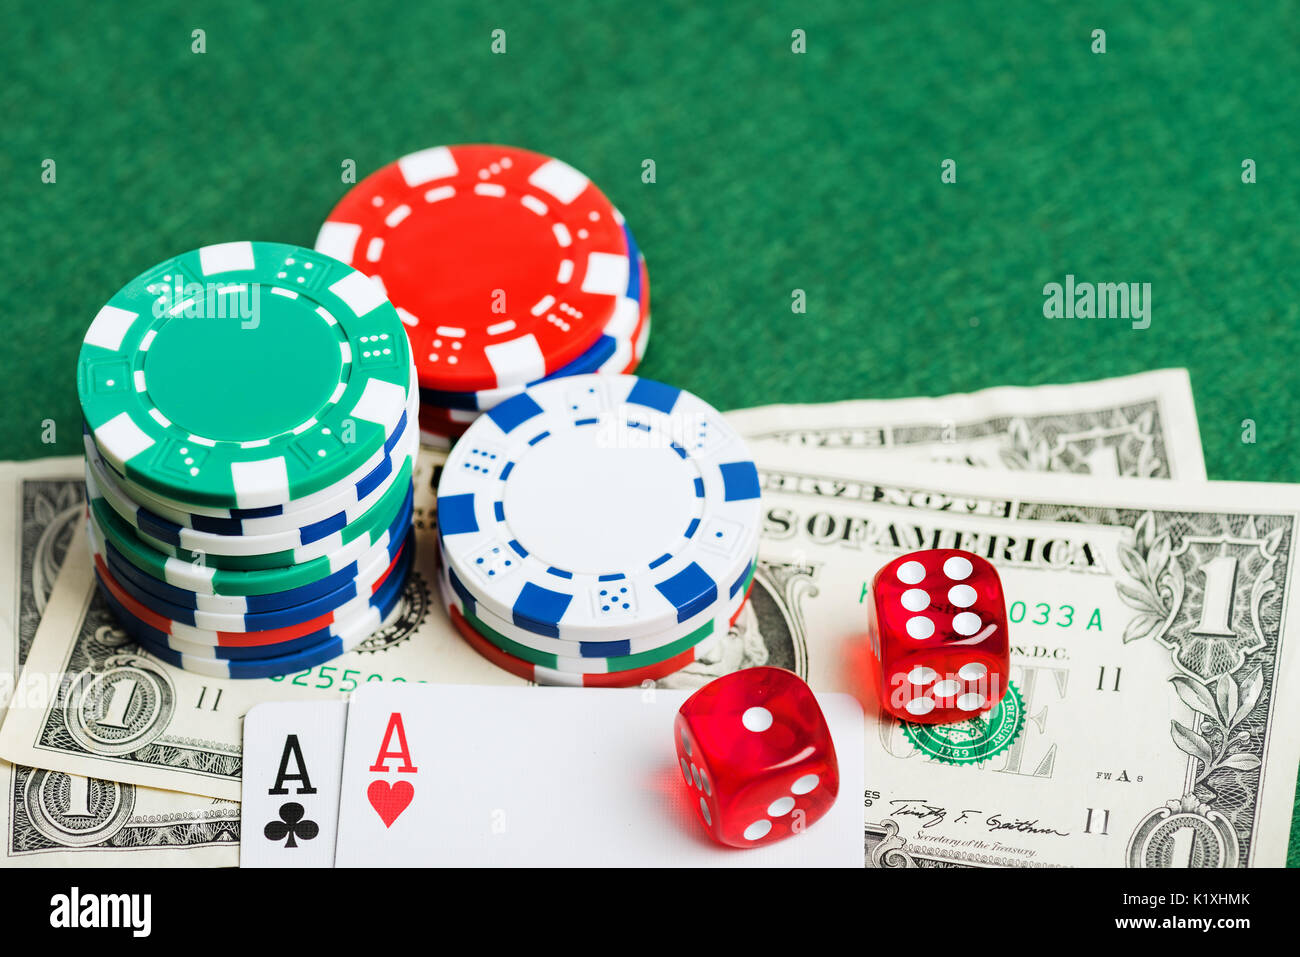 Casino grünen Tisch mit Chips, Geld und Würfel. Poker spiel Konzept  Stockfotografie - Alamy